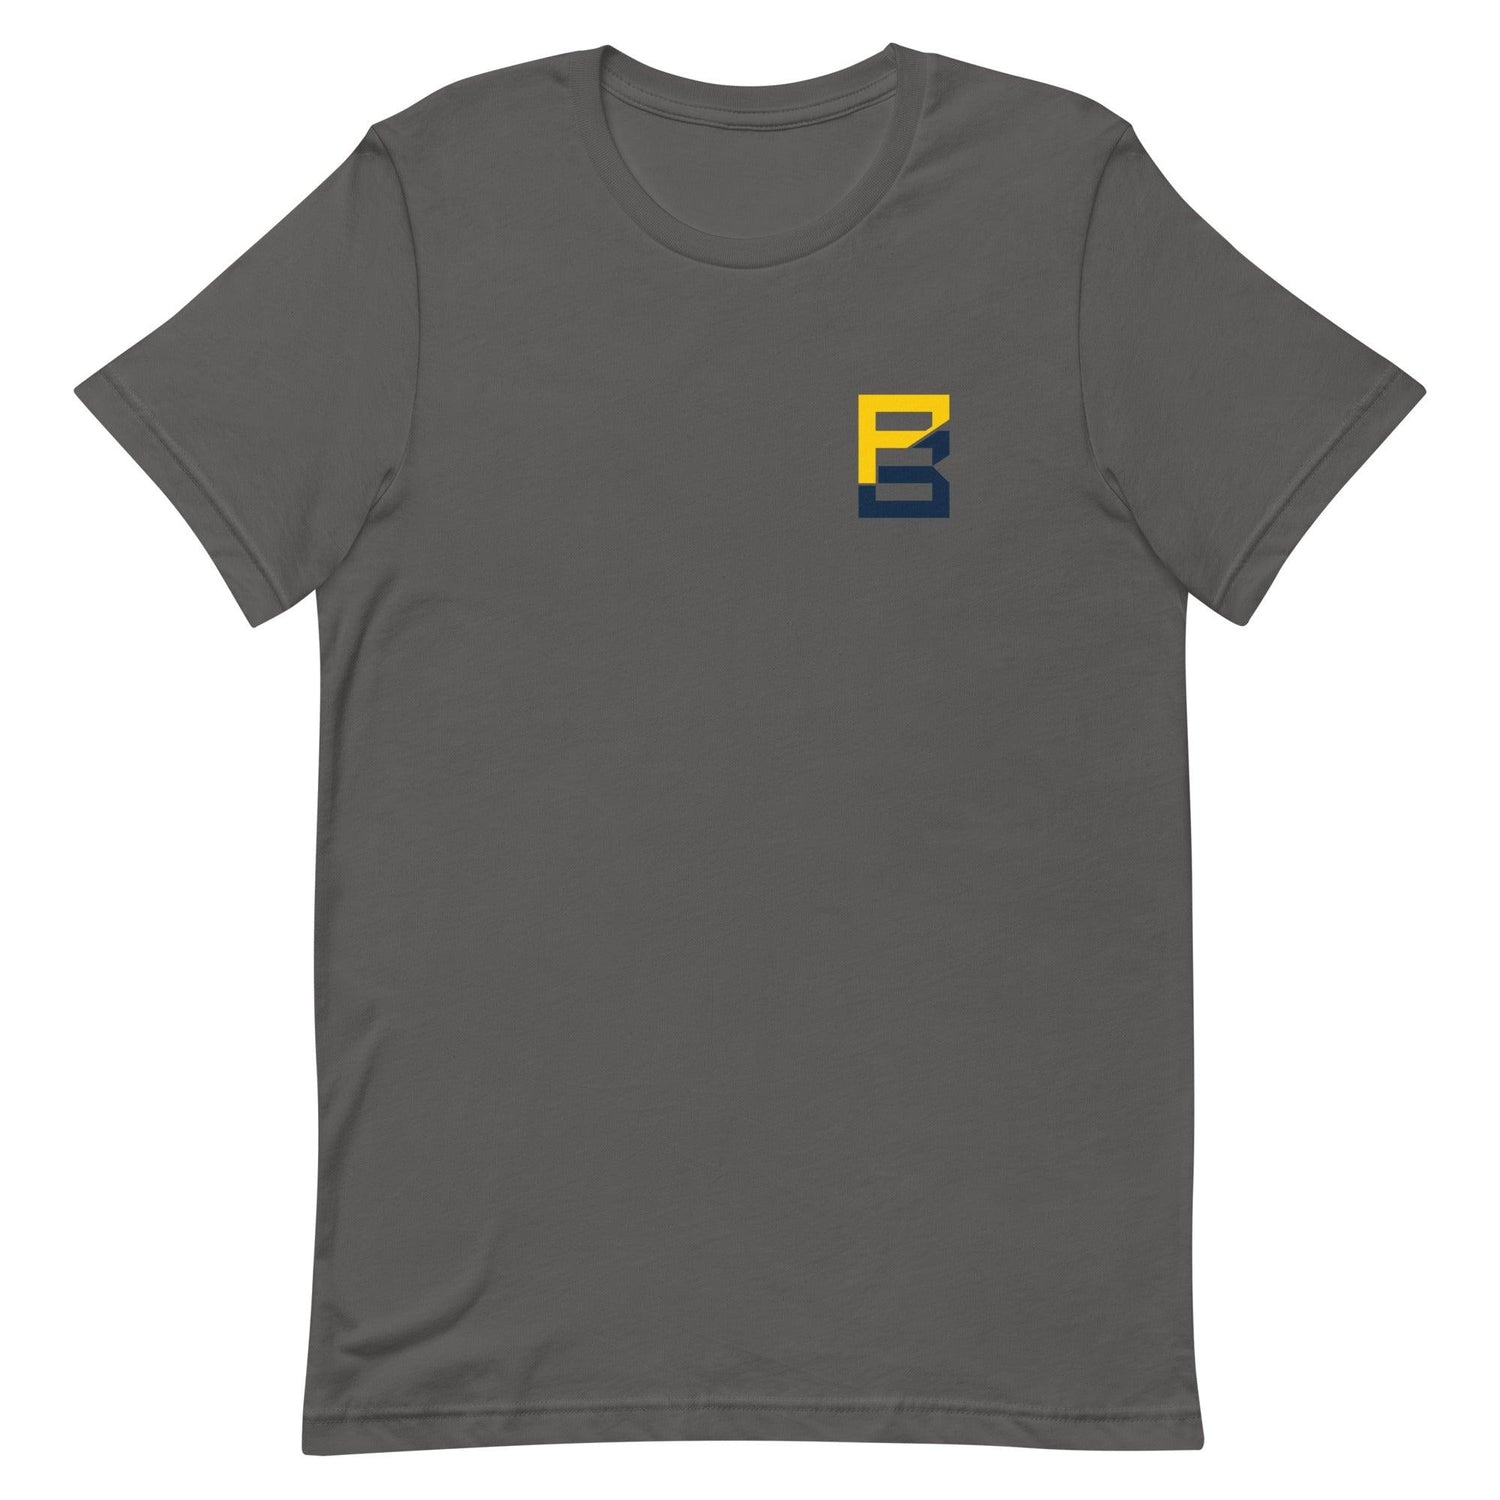 Peny Boone "Essential" t-shirt - Fan Arch